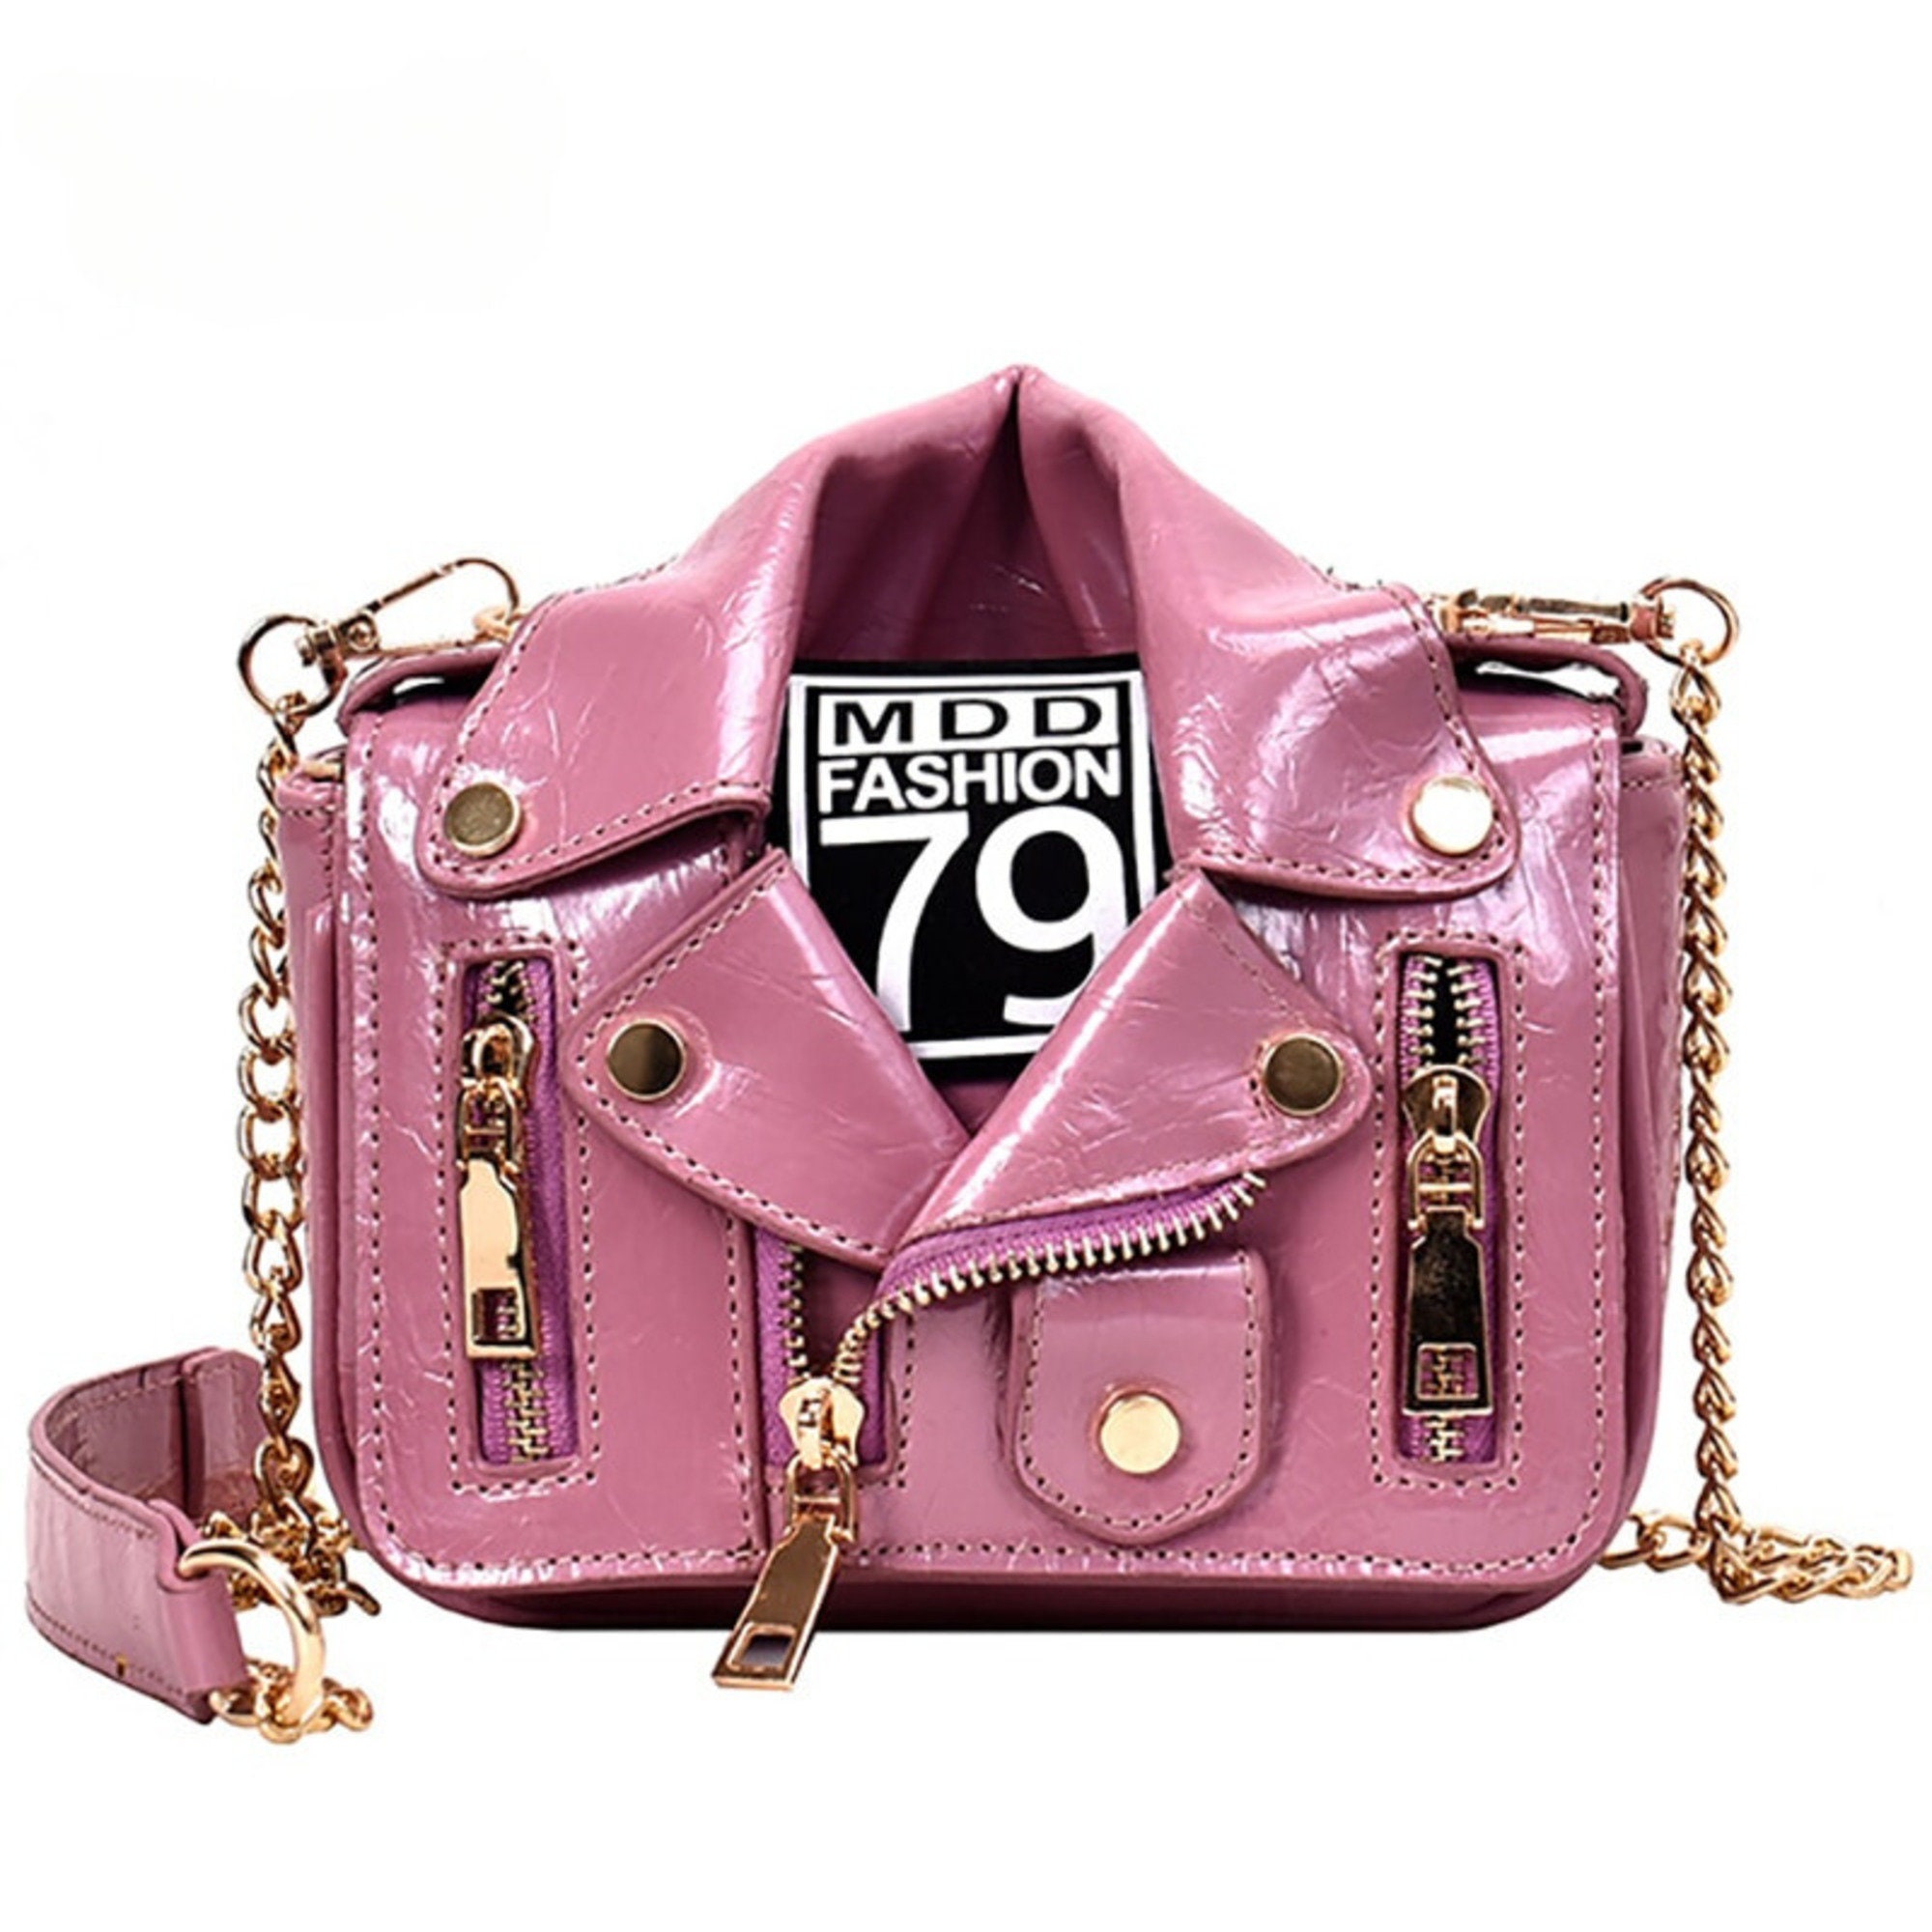 Handbags Moschino, Style code: 7532-8002-1222